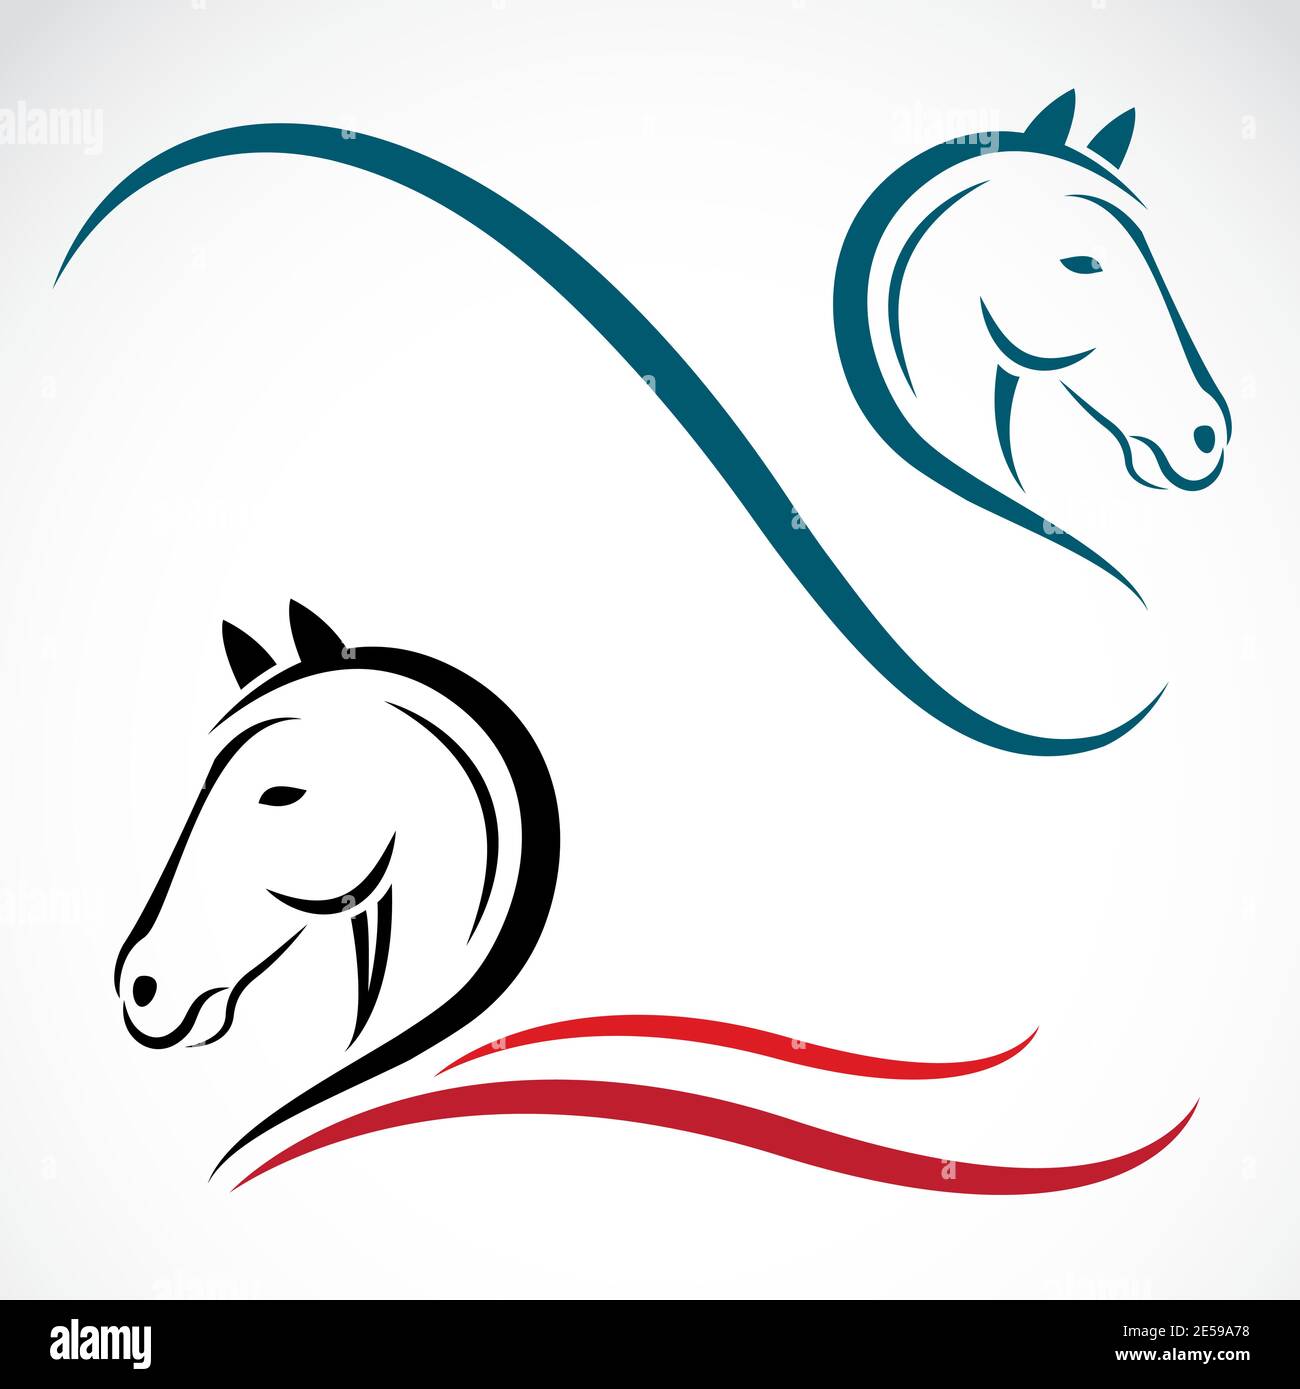 Vektor Kopf des Pferdes auf einem weißen Hintergrund. Leicht editierbare Vektorgrafik mit Ebenen. Wilde Tiere. Stock Vektor